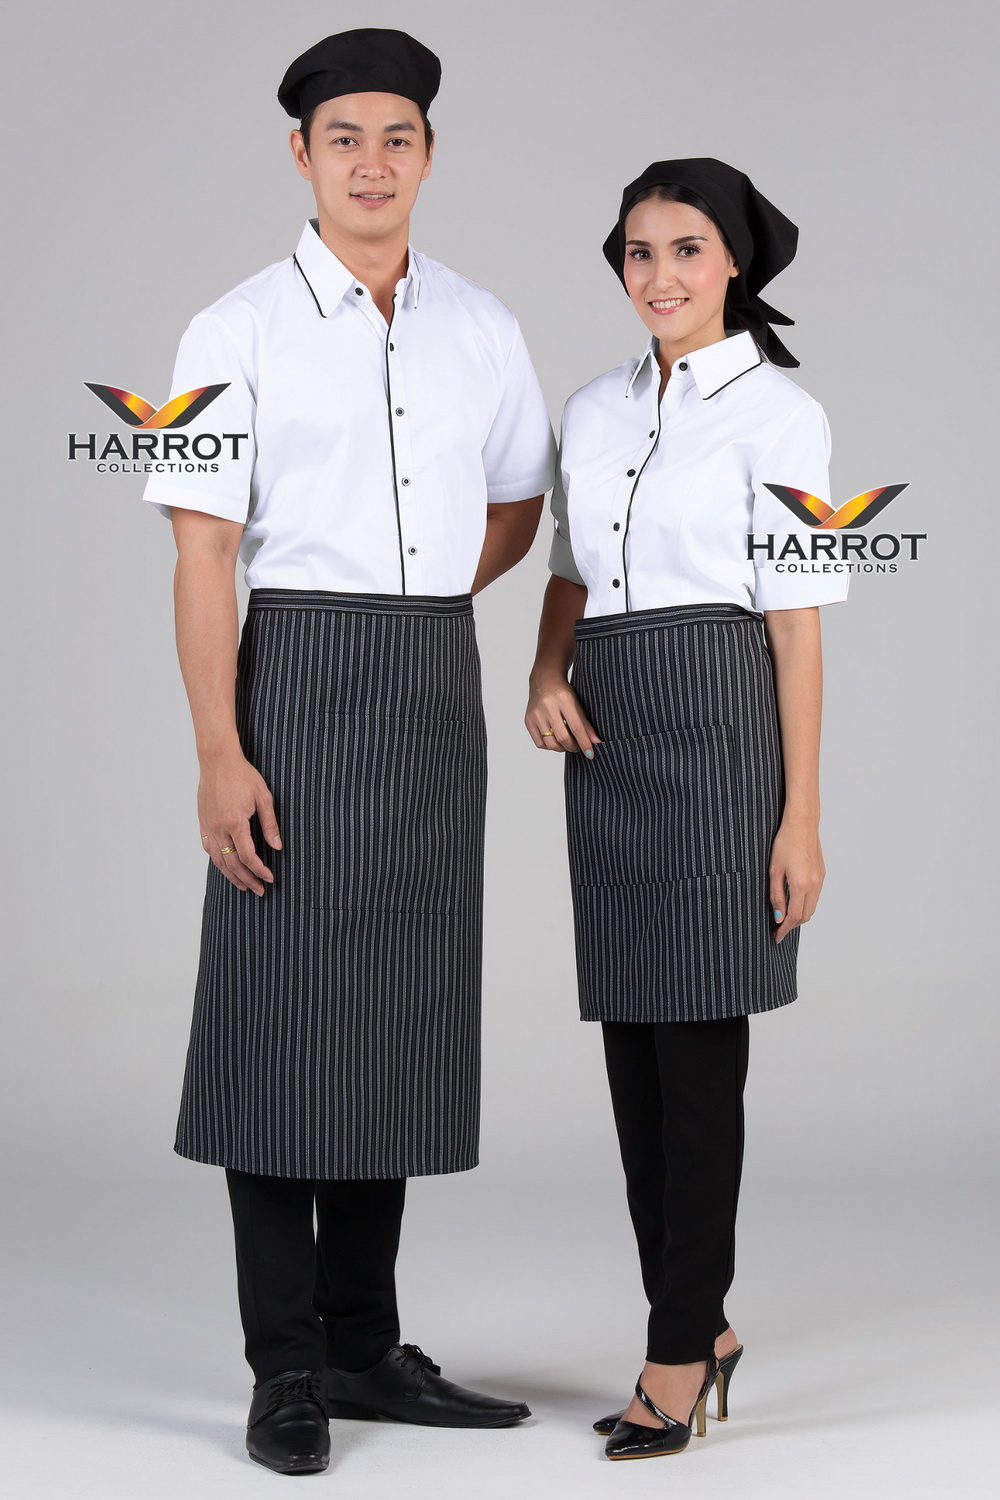 เสื้อพนักงานเสิร์ฟ เสื้อเสิร์ฟ เสื้อเชิ้ต เสื้อฟอร์ม เสื้อพนักงานต้อนรับ ชุดพนักงานเสิร์ฟ สีขาวกุ๊นดำ (SHI1201)